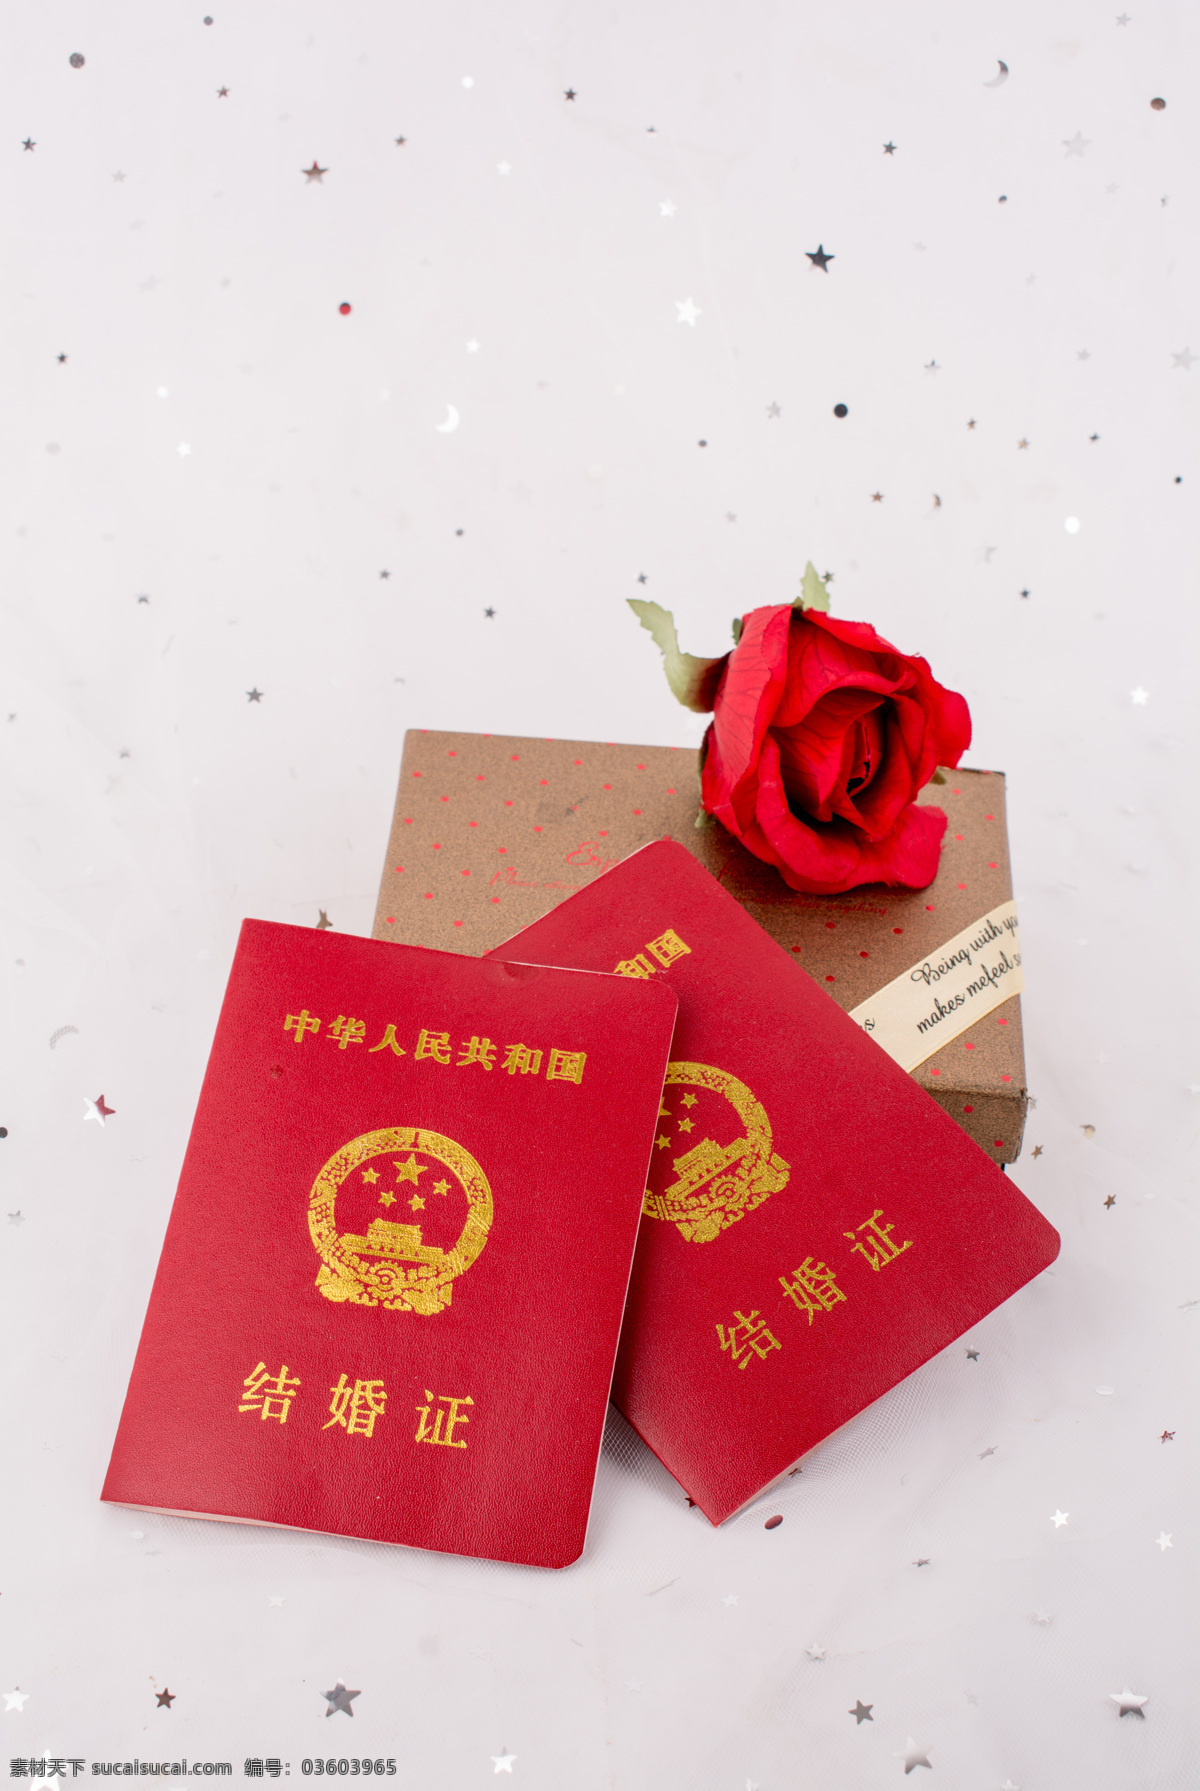 红色 喜庆 结婚证 证件 摄影图 实物摄影 产品摄影 生活百科 生活素材